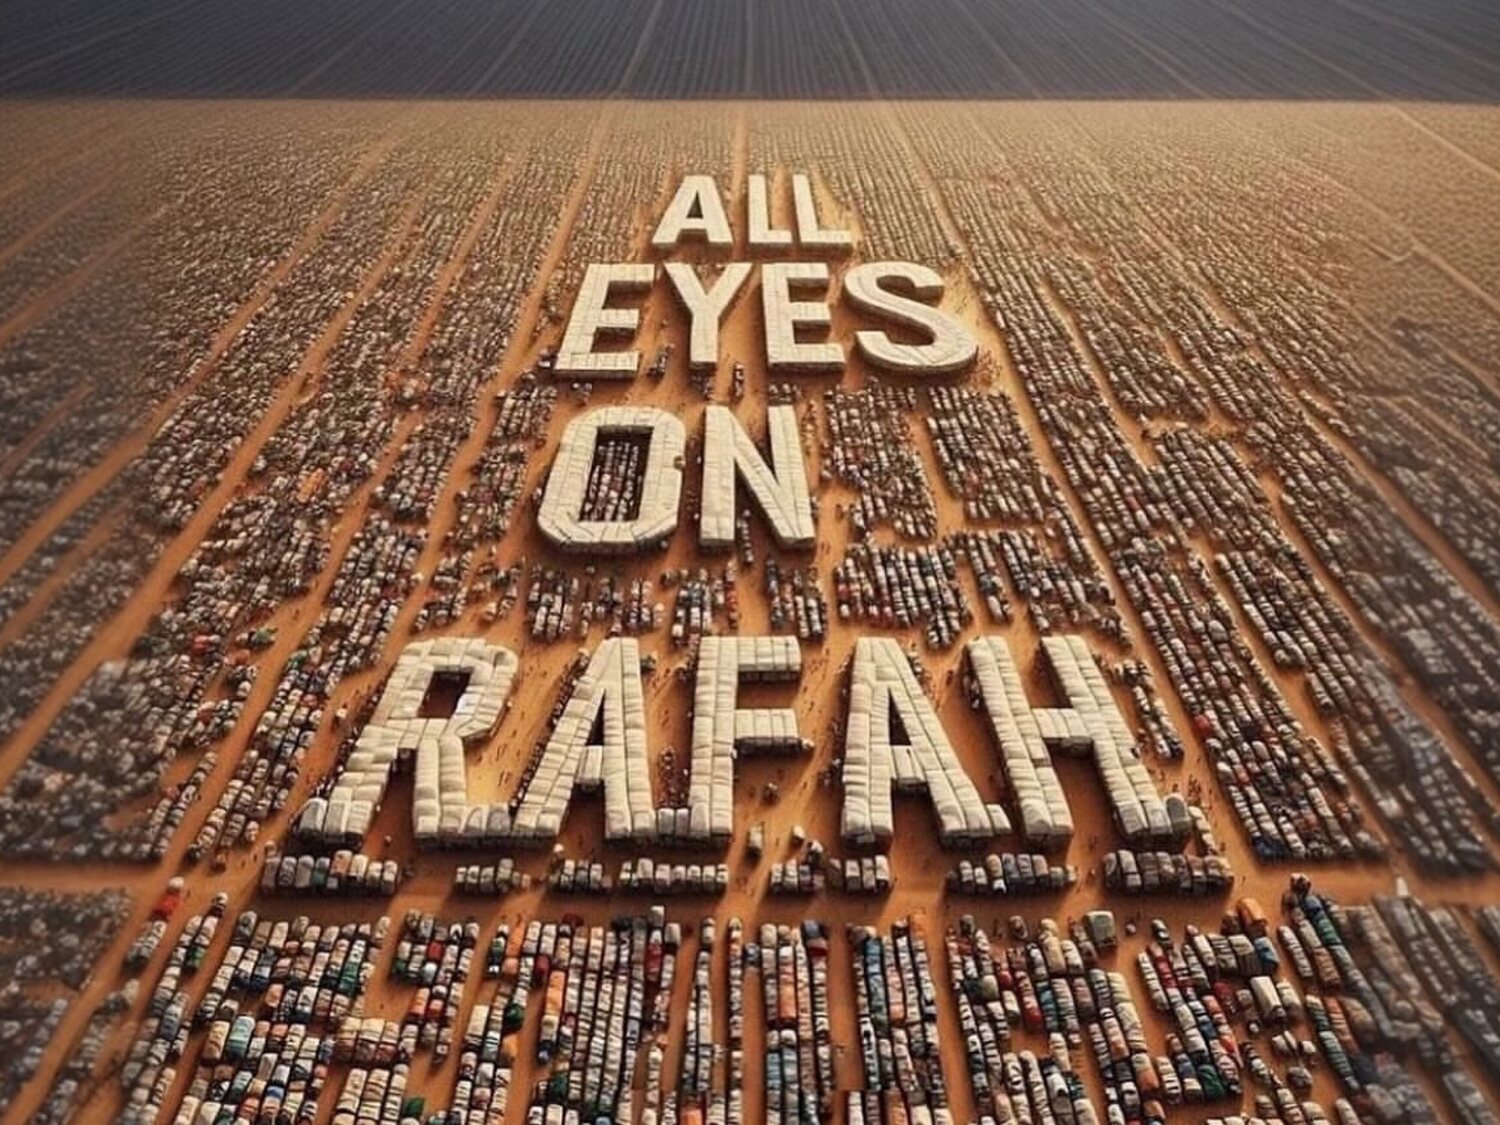 "All eyes on Rafah": todo lo que hay detrás del meme político generado por IA